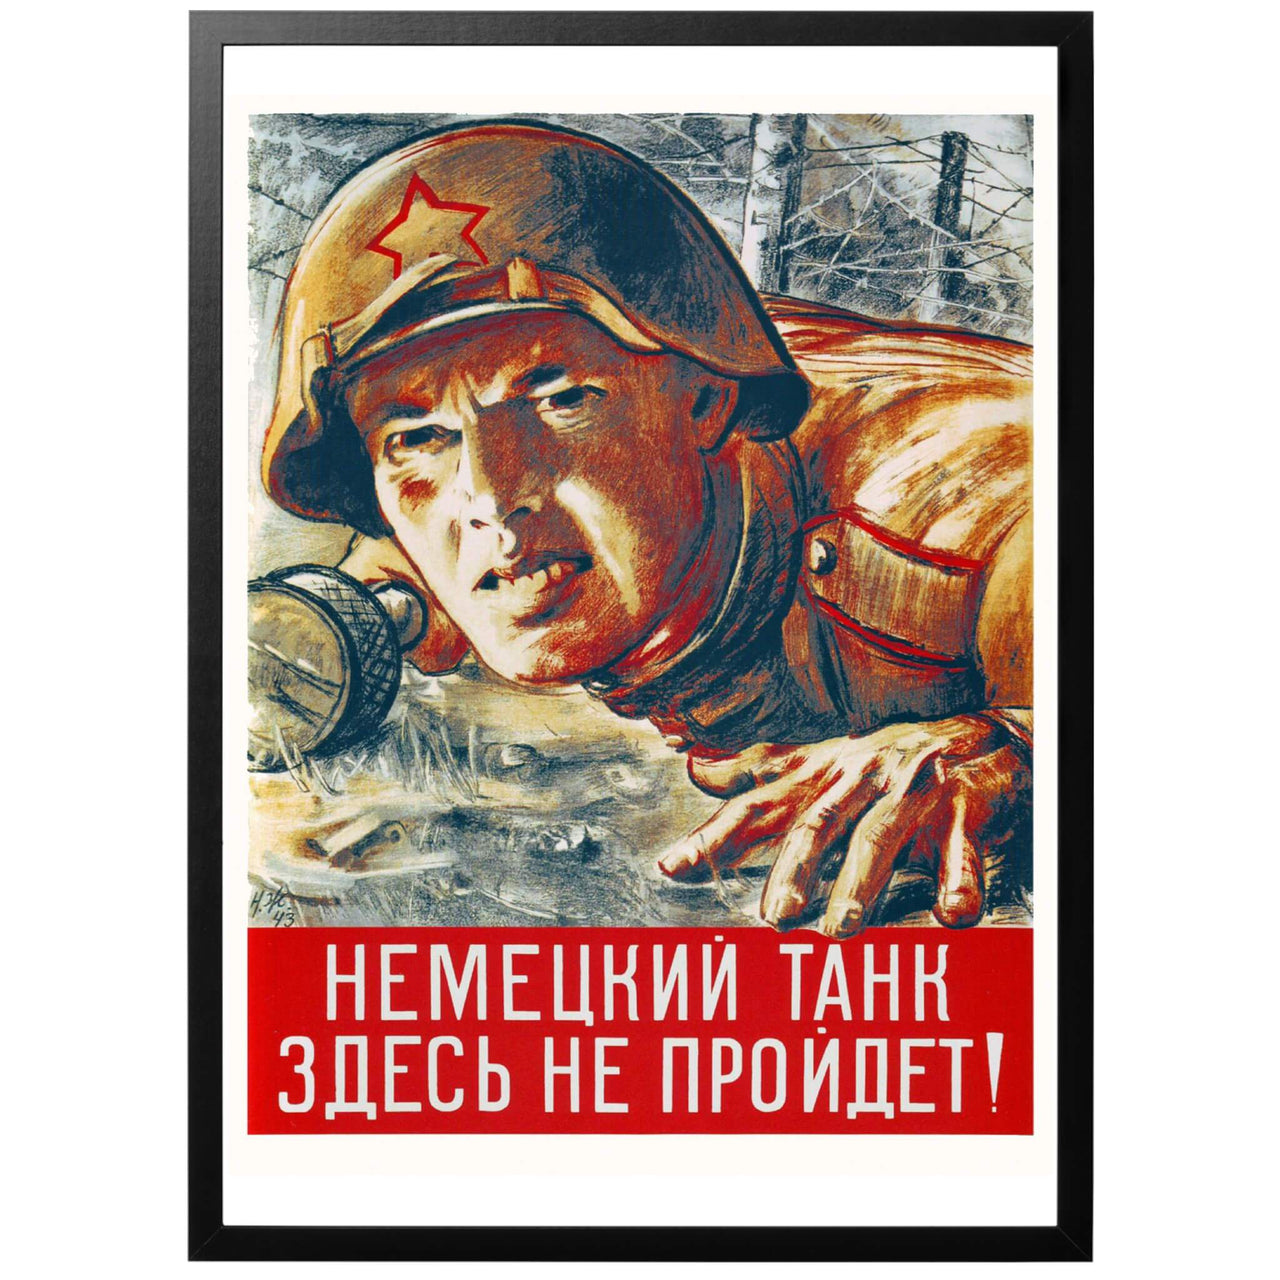 Ingen tysk stridsvagn kommer komma igenom här! (НЕMEЦKИЙ TAHК ЗДЕСЬ HE ПPOЙДET!) Sovjetisk WWII affisch från 1943. Denna krigsaffisch citerar en av de stora Röda Armé-generalerna Nikolai Zhukov. Den uppmanar den Sovjetiska militären och befolkningen att inte släppa igenom några fiender genom fronten. Skydda moderlandet!